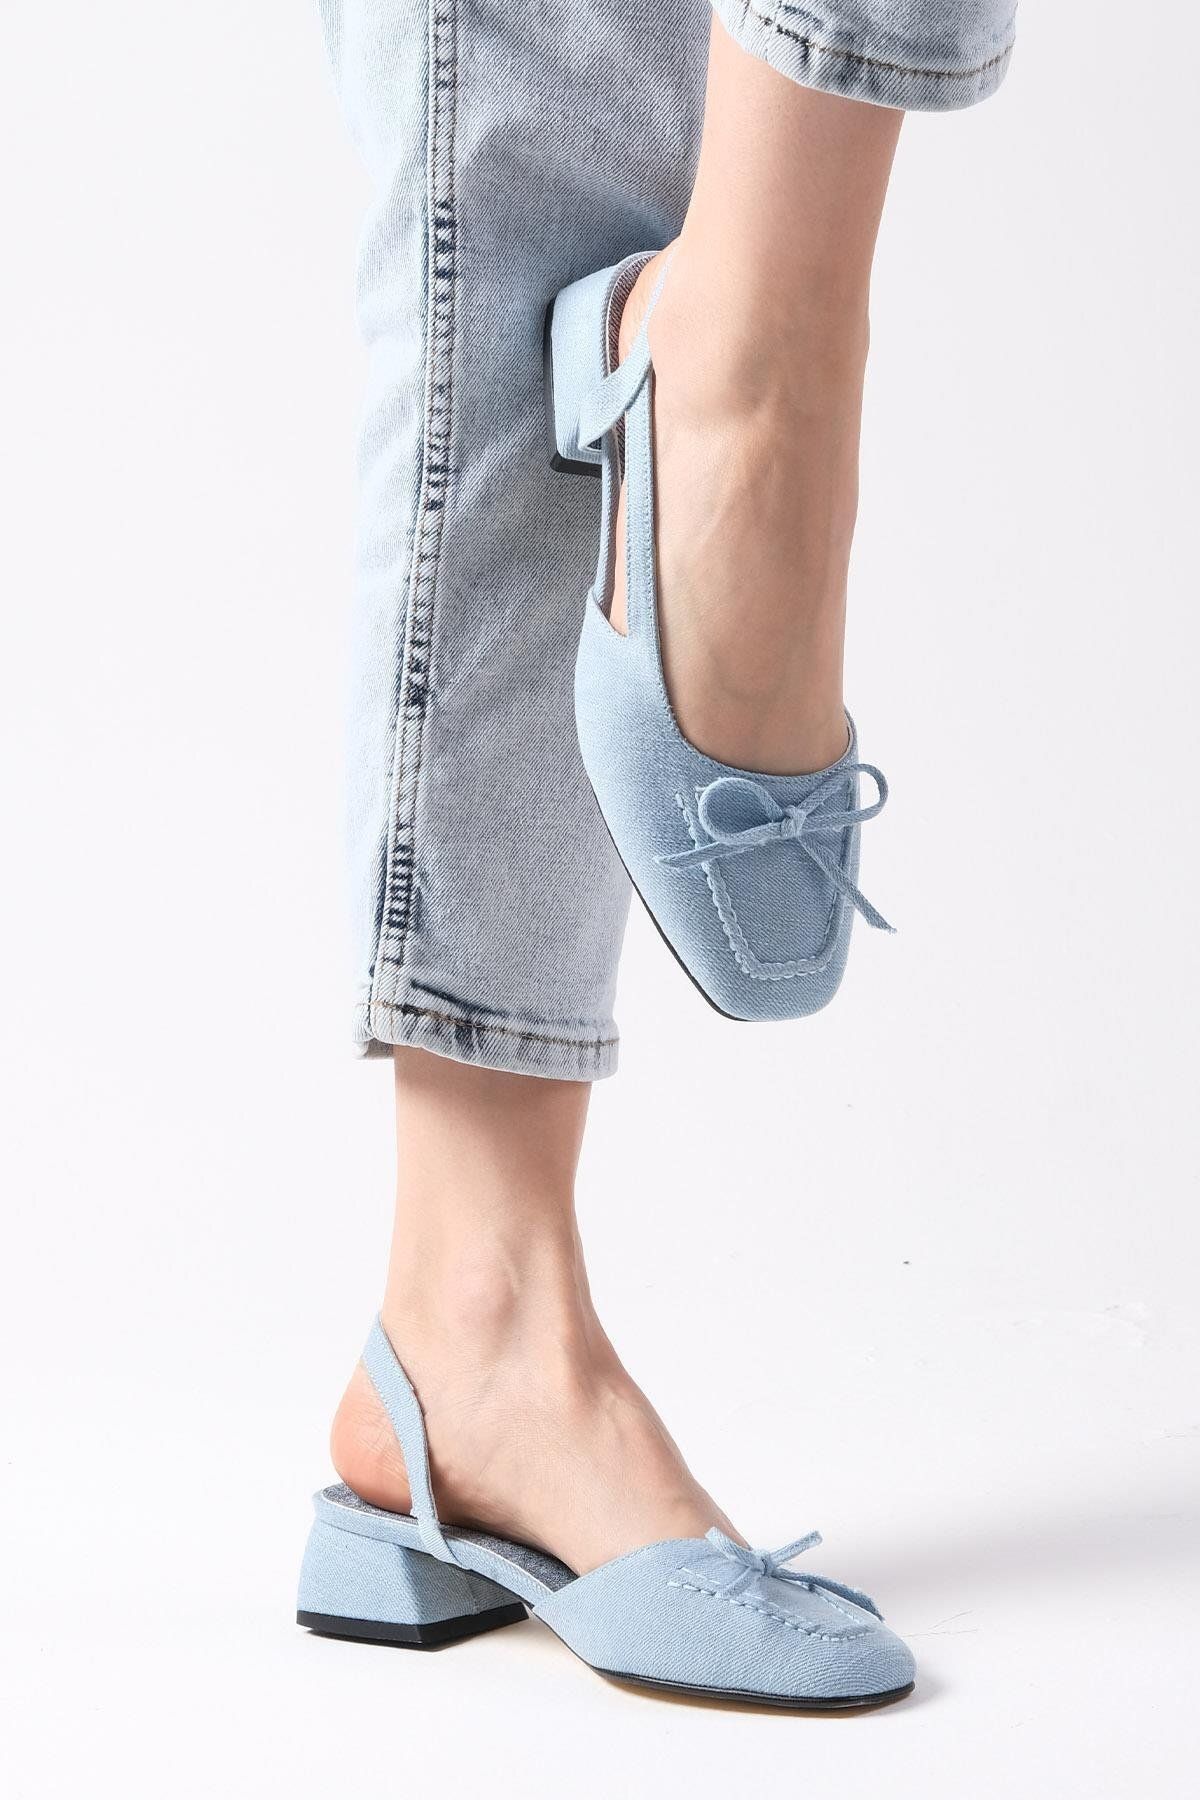 Mio Gusto Bria Mavi Renk Denim Kumaş Arkası Açık Kadın Kısa Topuklu Kot Ayakkabı